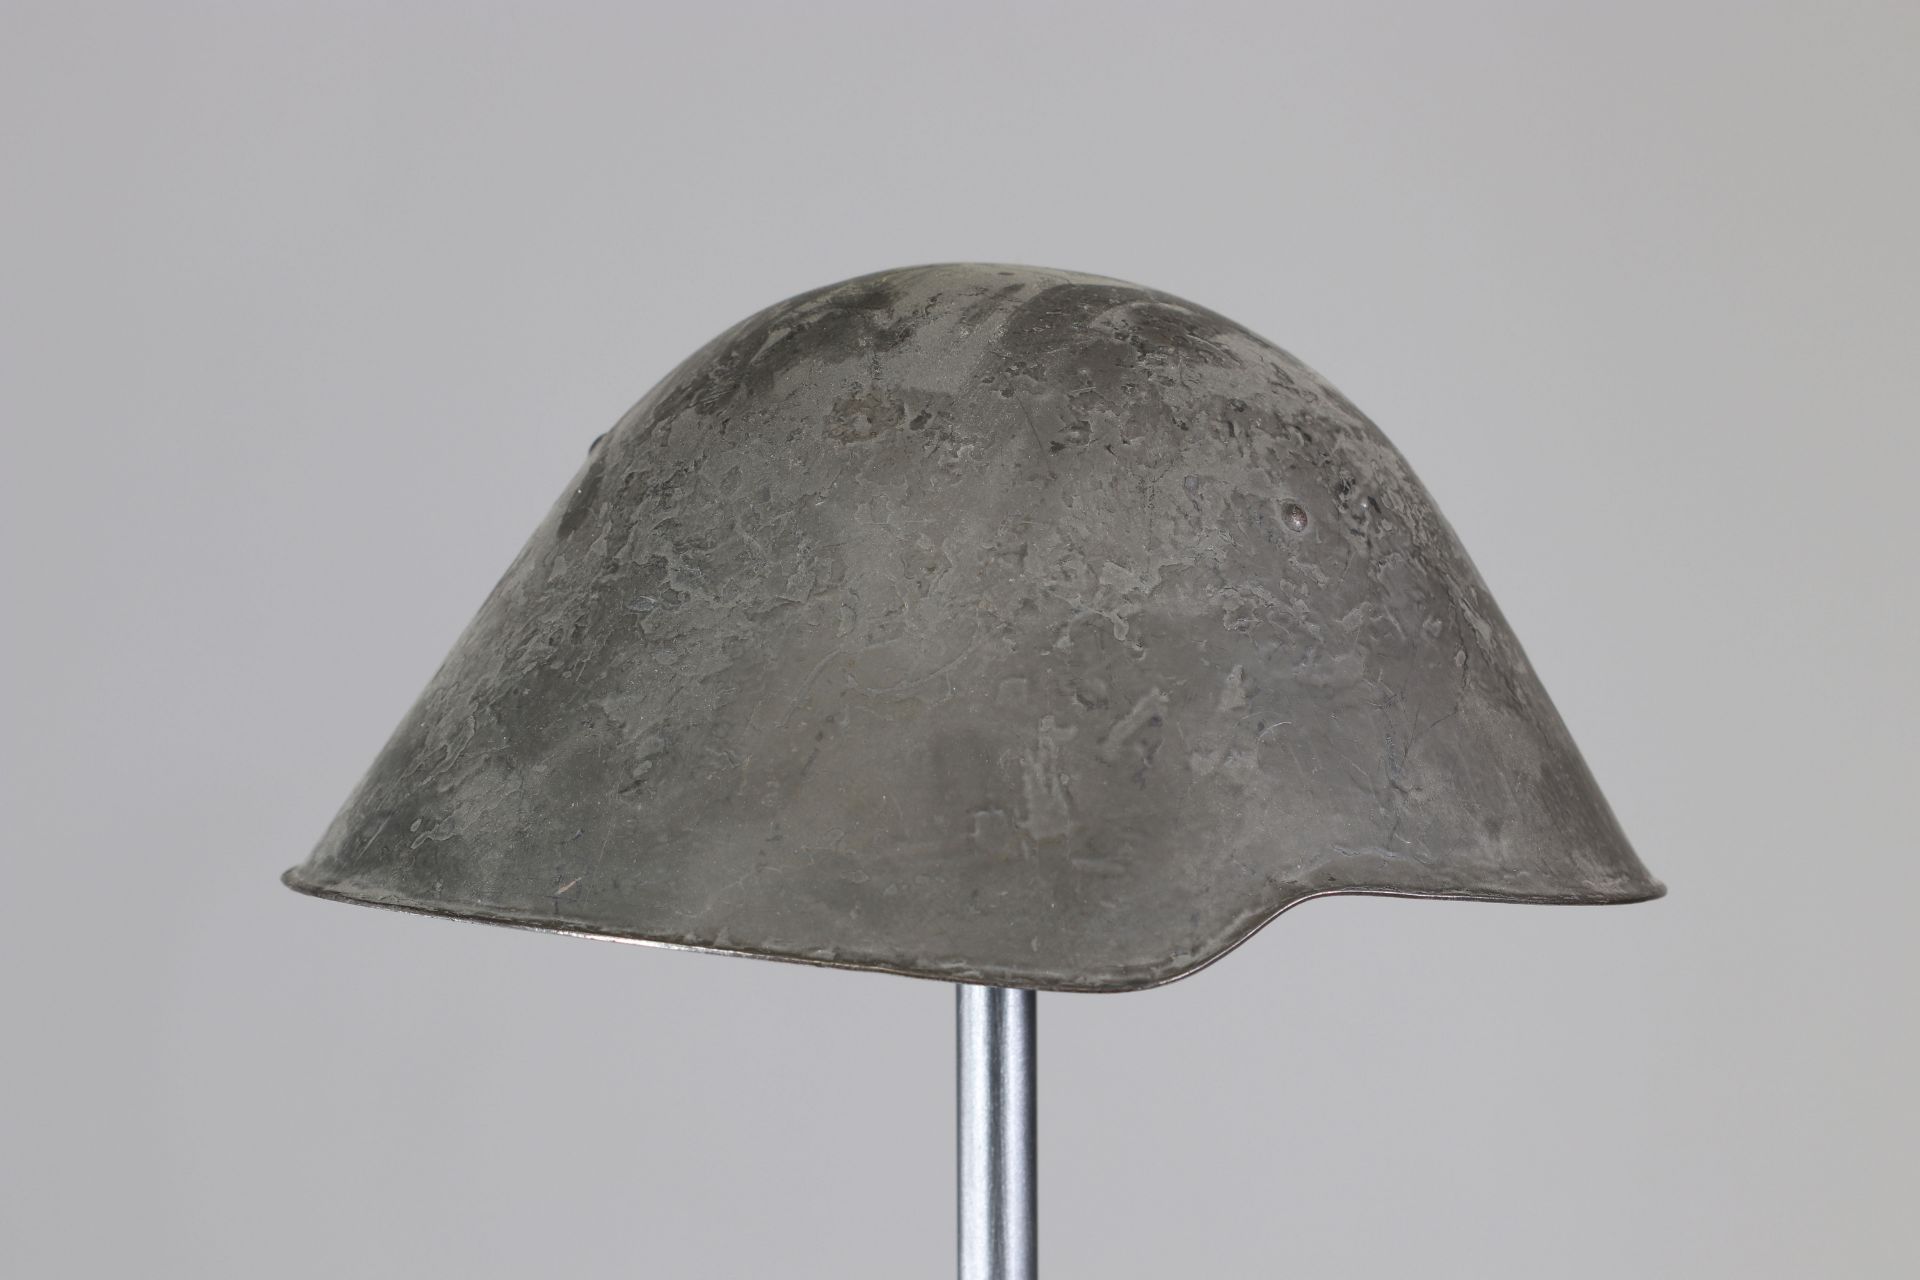 Eastern country helmet - Image 2 of 5